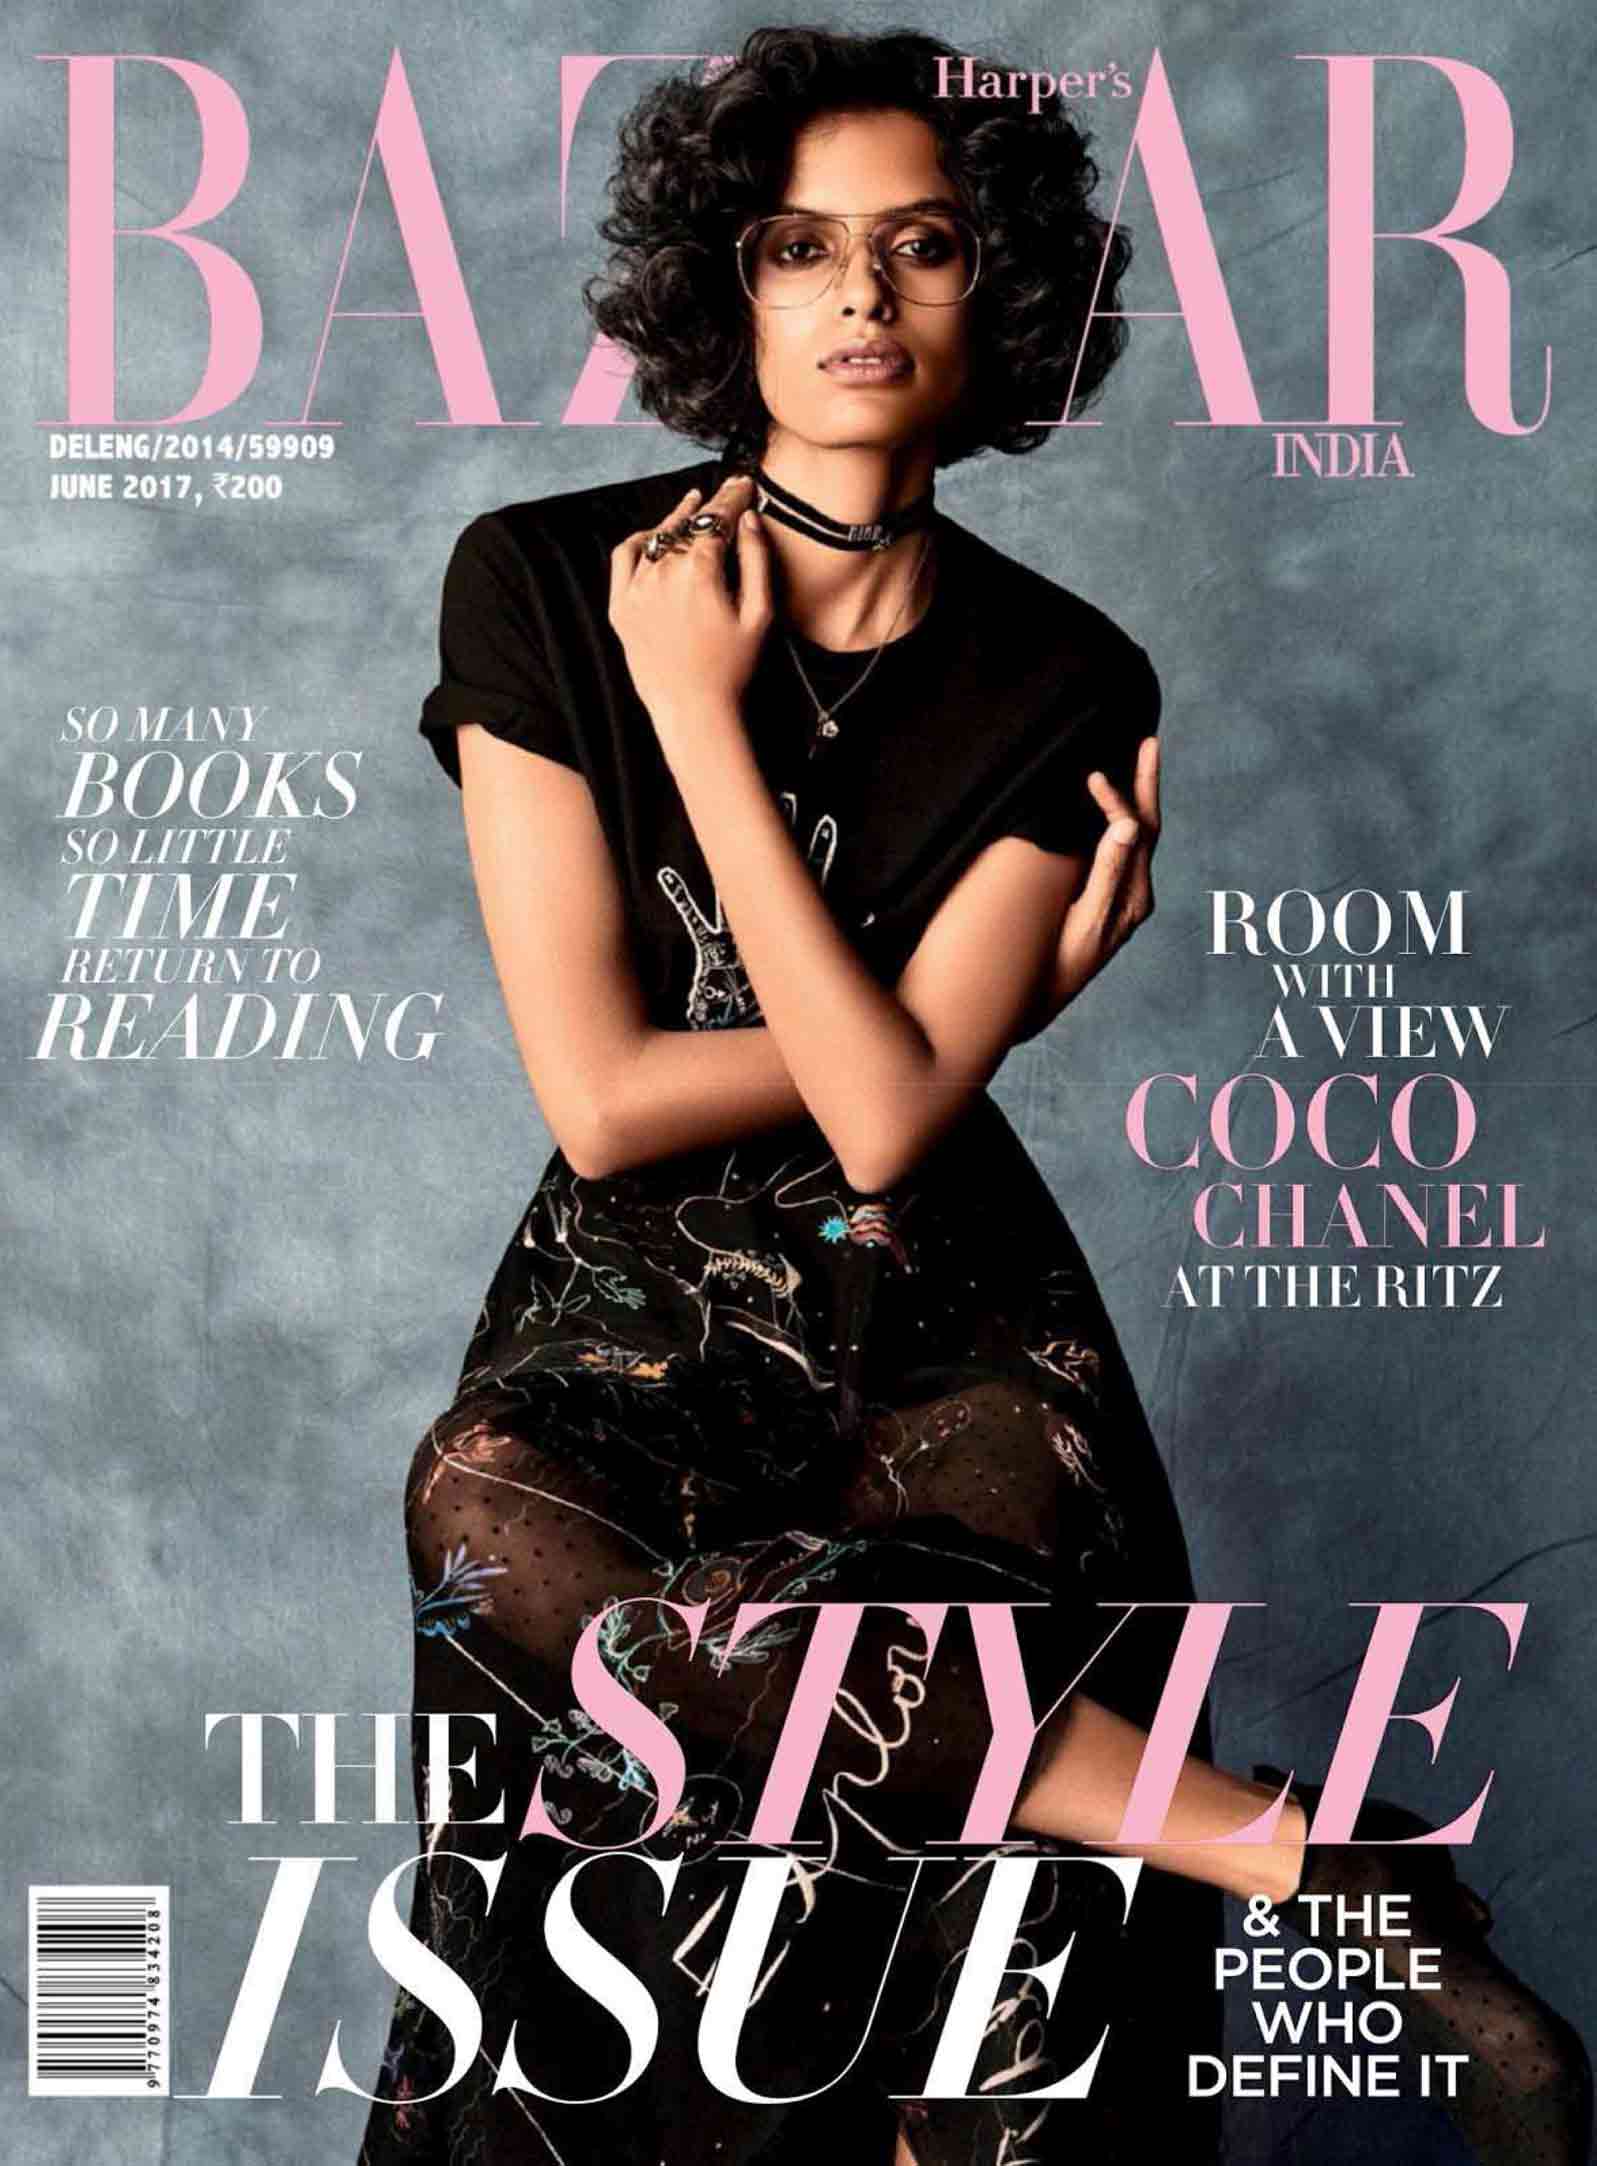 Meet Bazaar India's coverstars, - Harper's Bazaar India